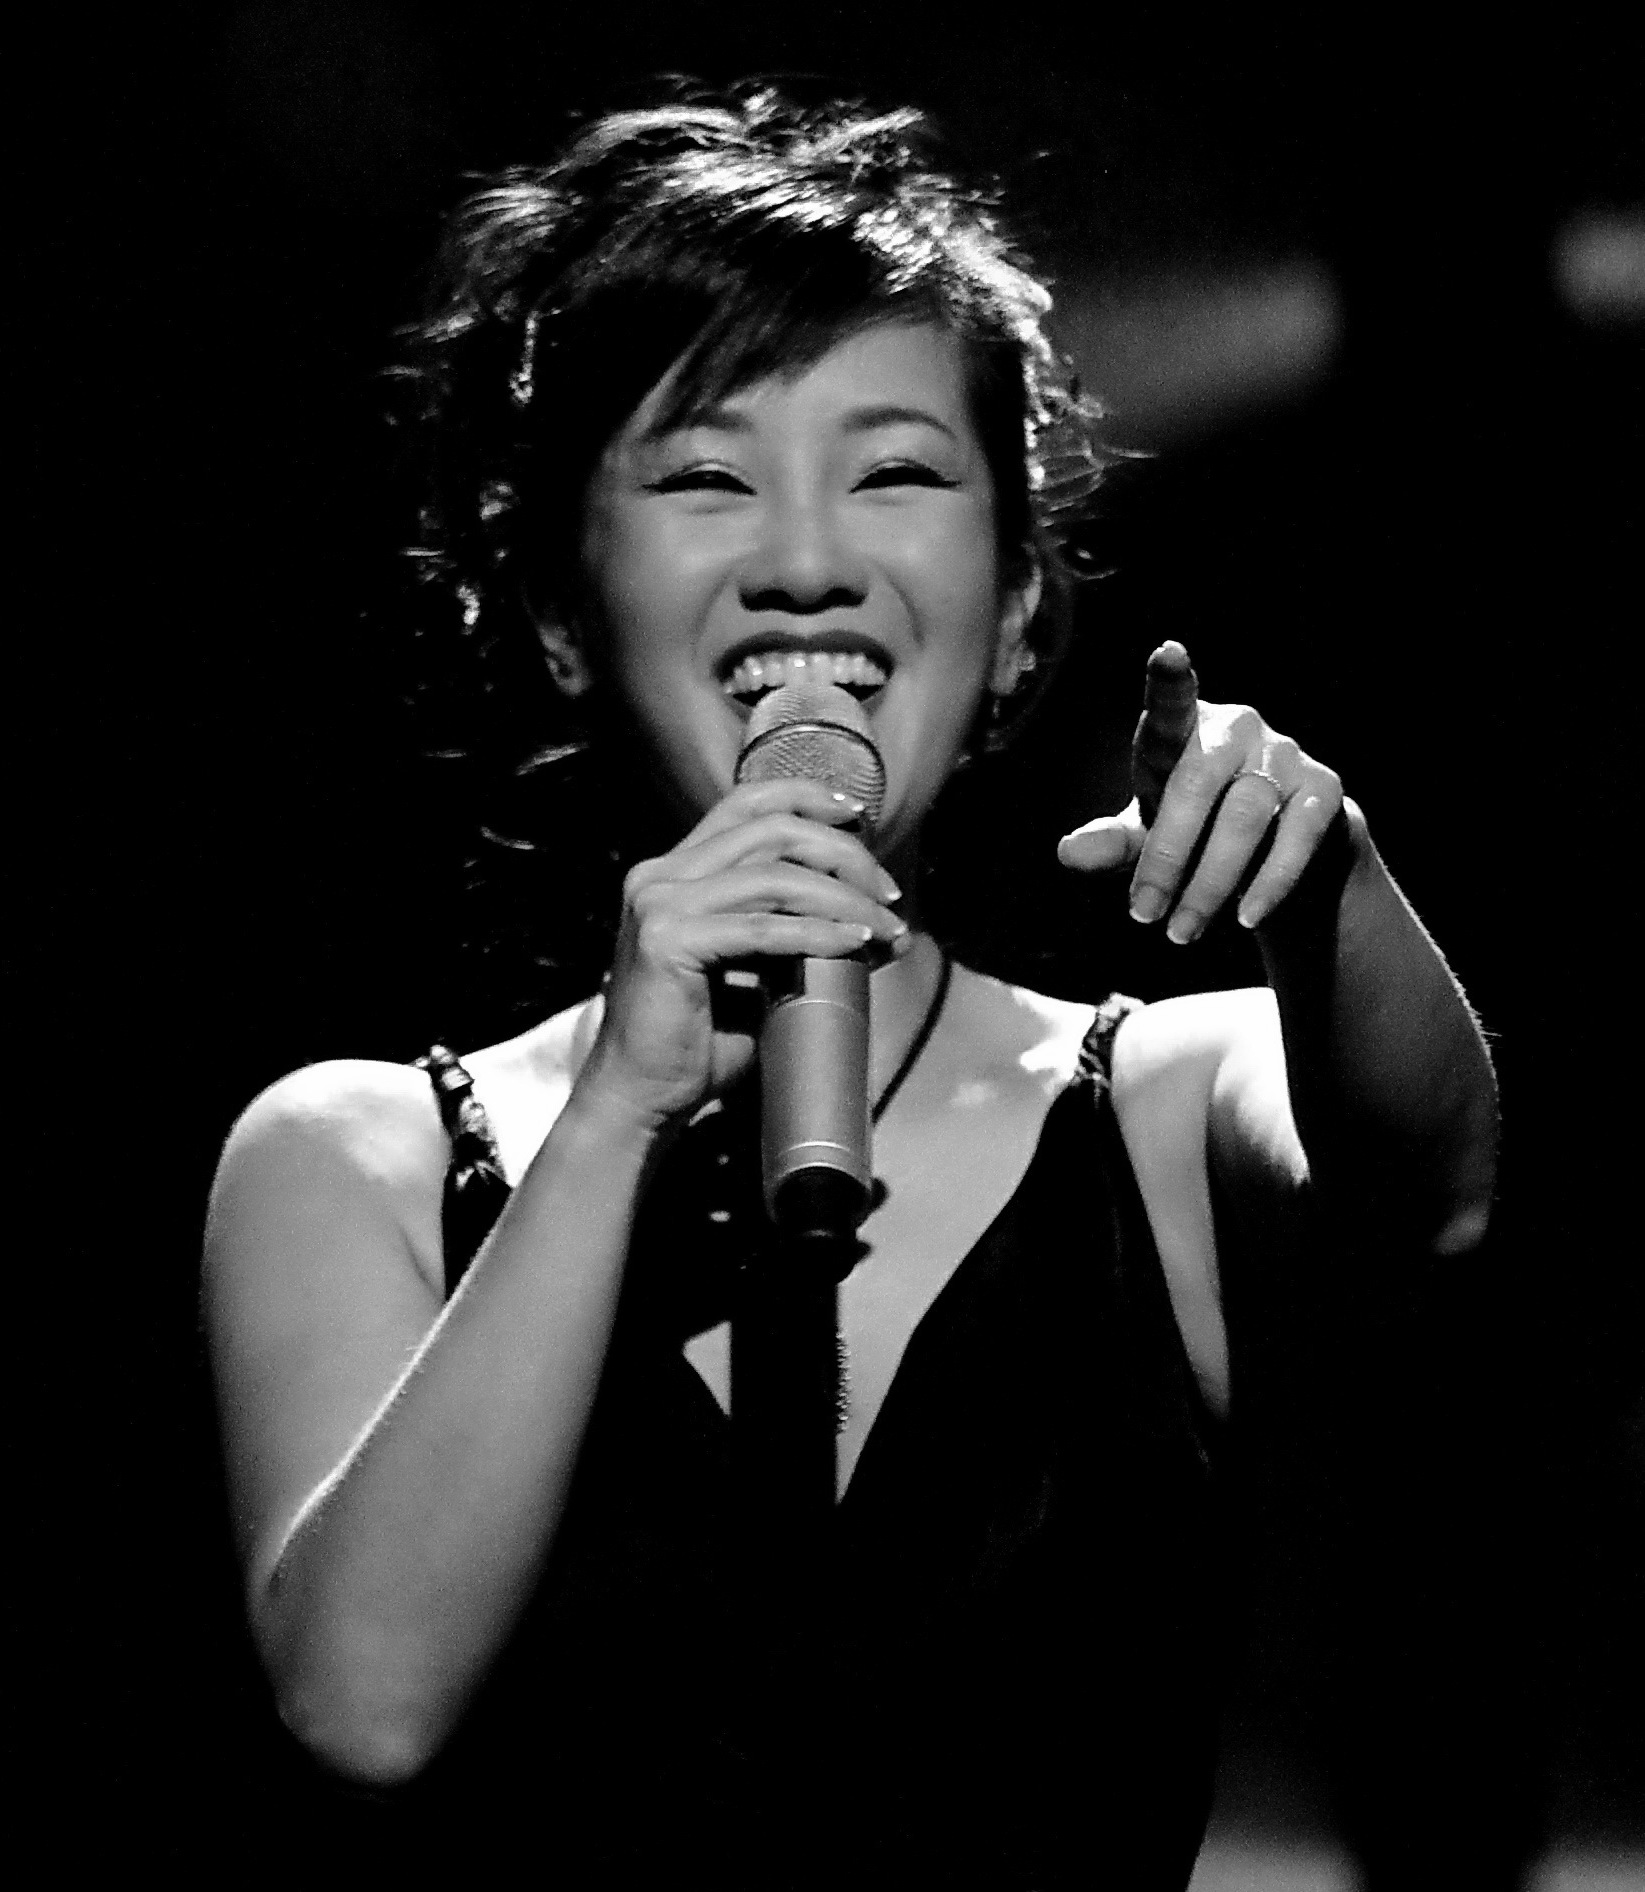 Hồng Nhung, Wikipedia: Mời bạn đến và khám phá hình ảnh của ca sĩ Hồng Nhung trên trang Wikipedia. Với giọng hát đặc biệt và sự nghiệp âm nhạc đài hoàng, Hồng Nhung luôn nhận được sự yêu mến và ngưỡng mộ của khán giả trong và ngoài nước.